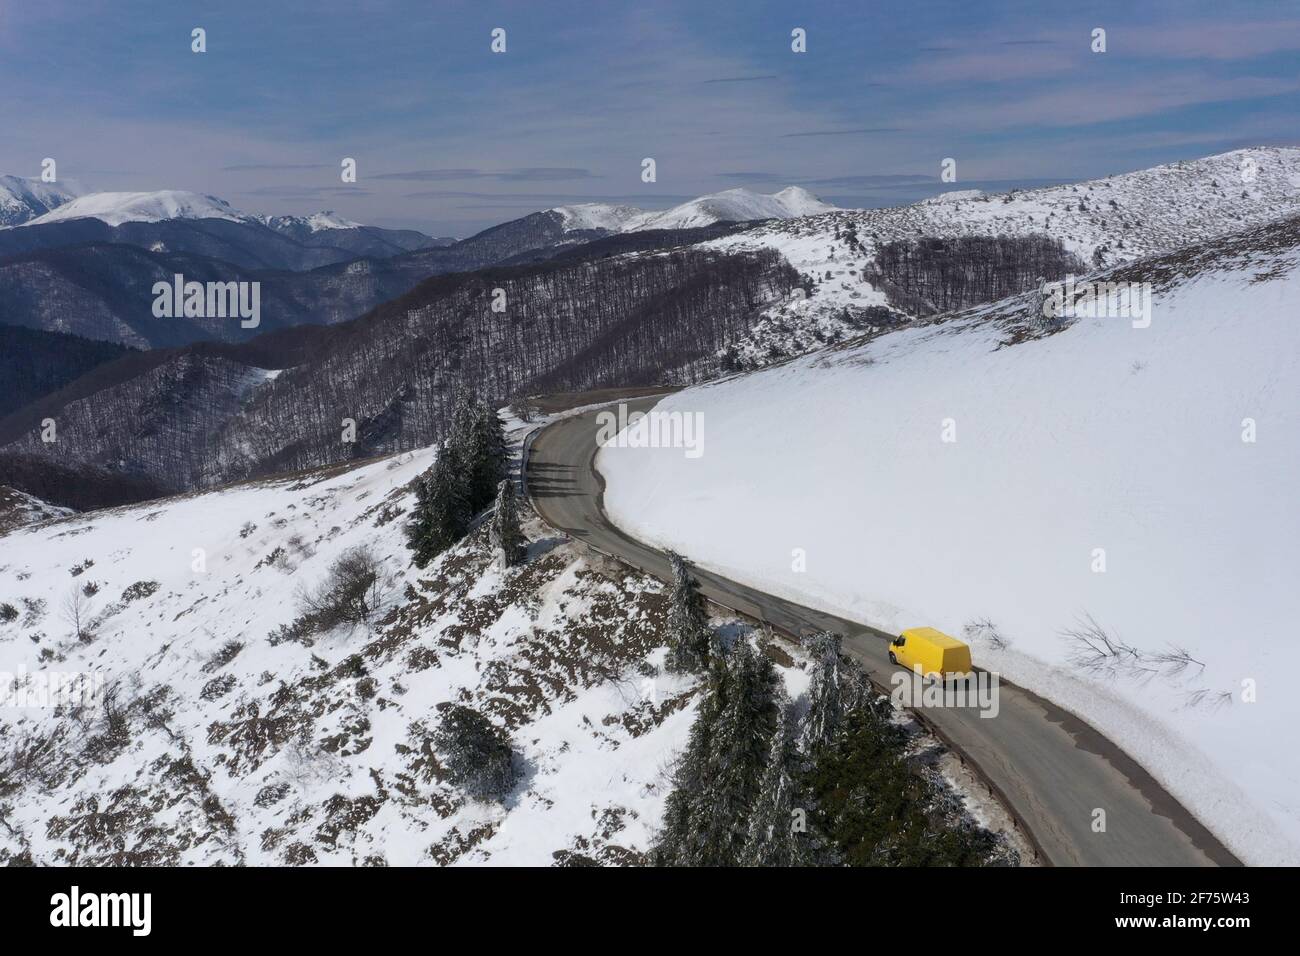 Imagen aérea de un microbús amarillo que se mueve en un carretera de montaña nevada Foto de stock